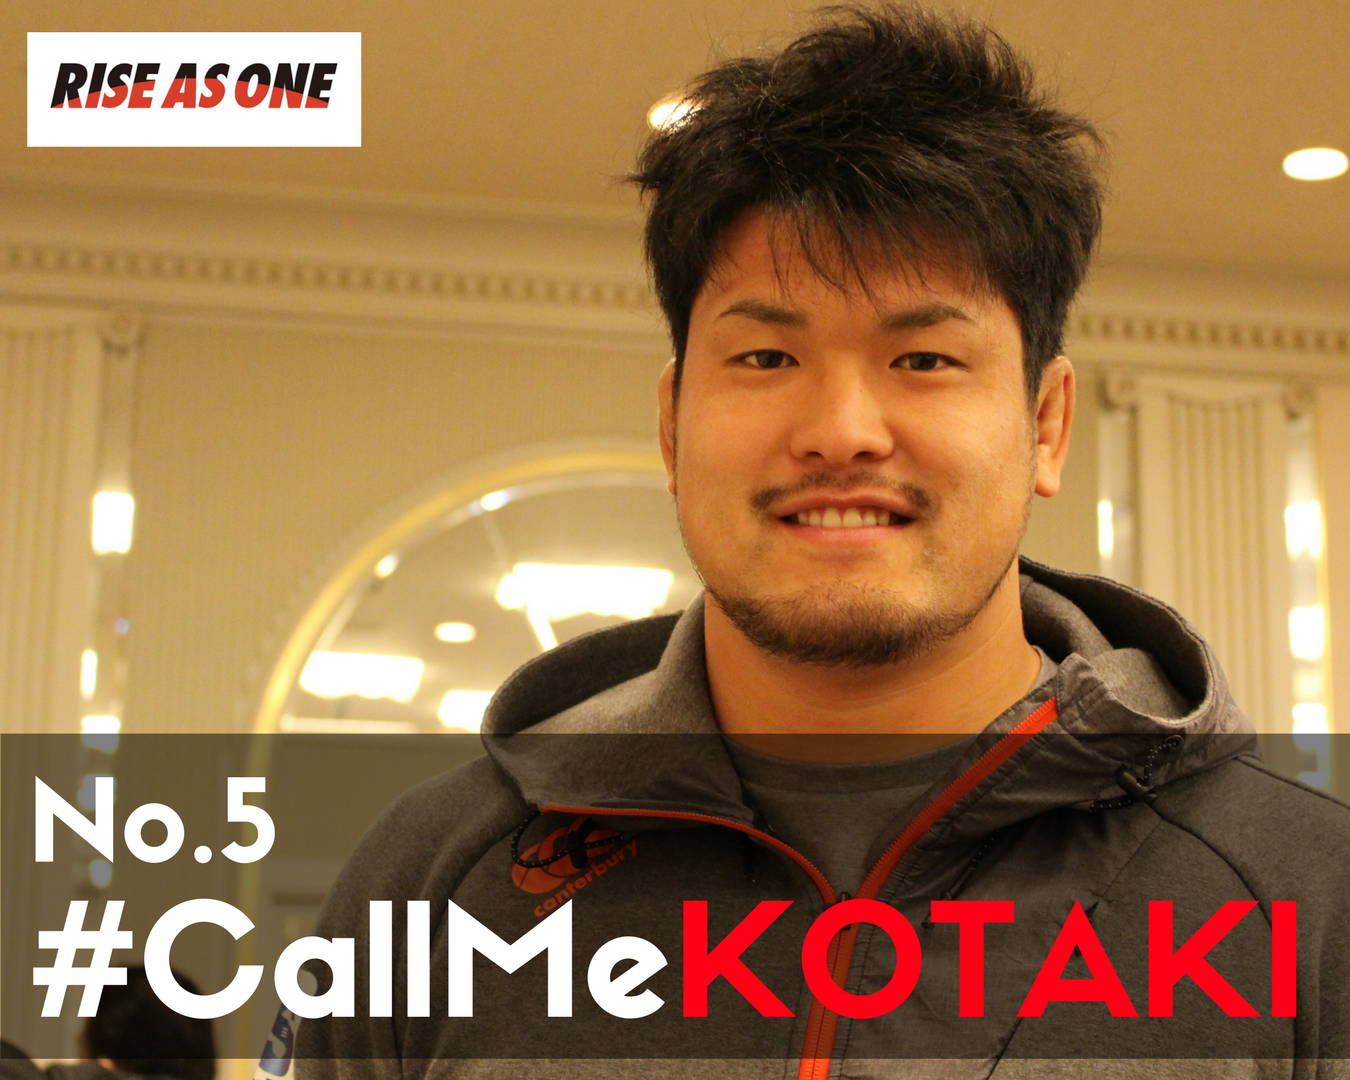 Call Me KOTAKI!